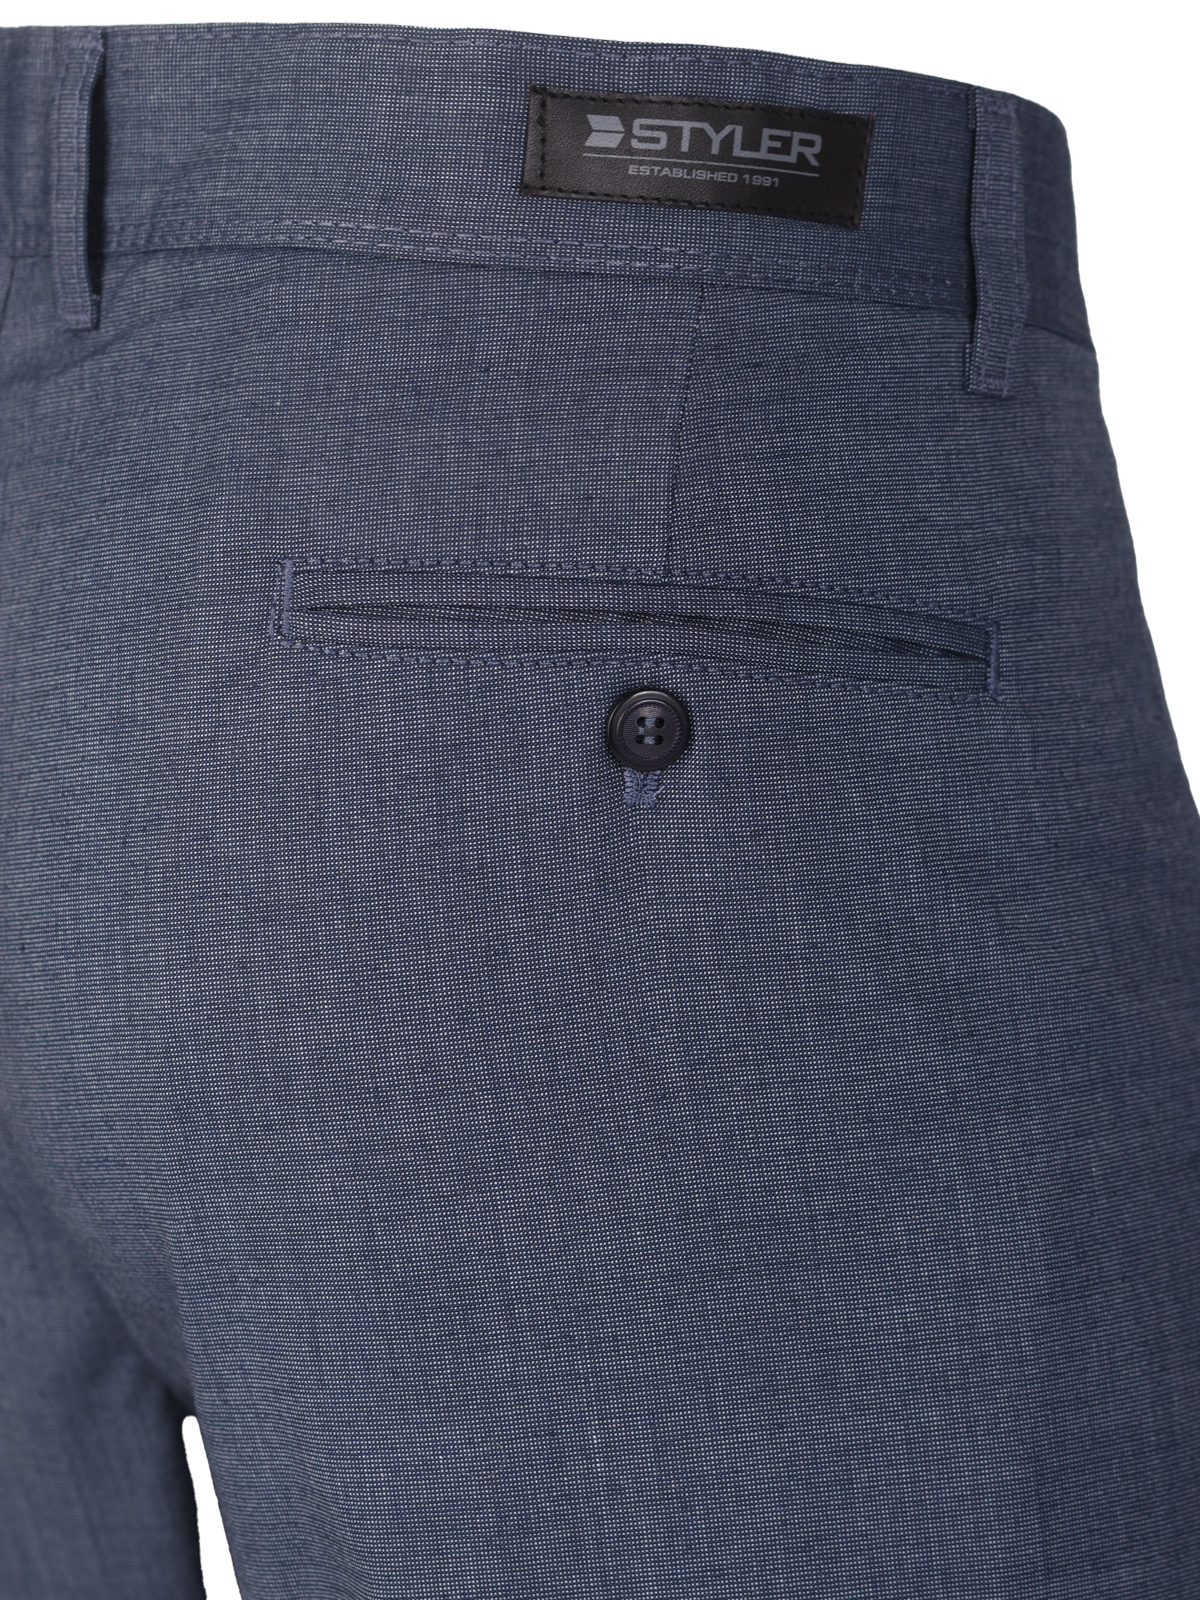 Σπορ κομψό παντελόνι σε μπλε χρώμα - 60305 € 66.37 img3